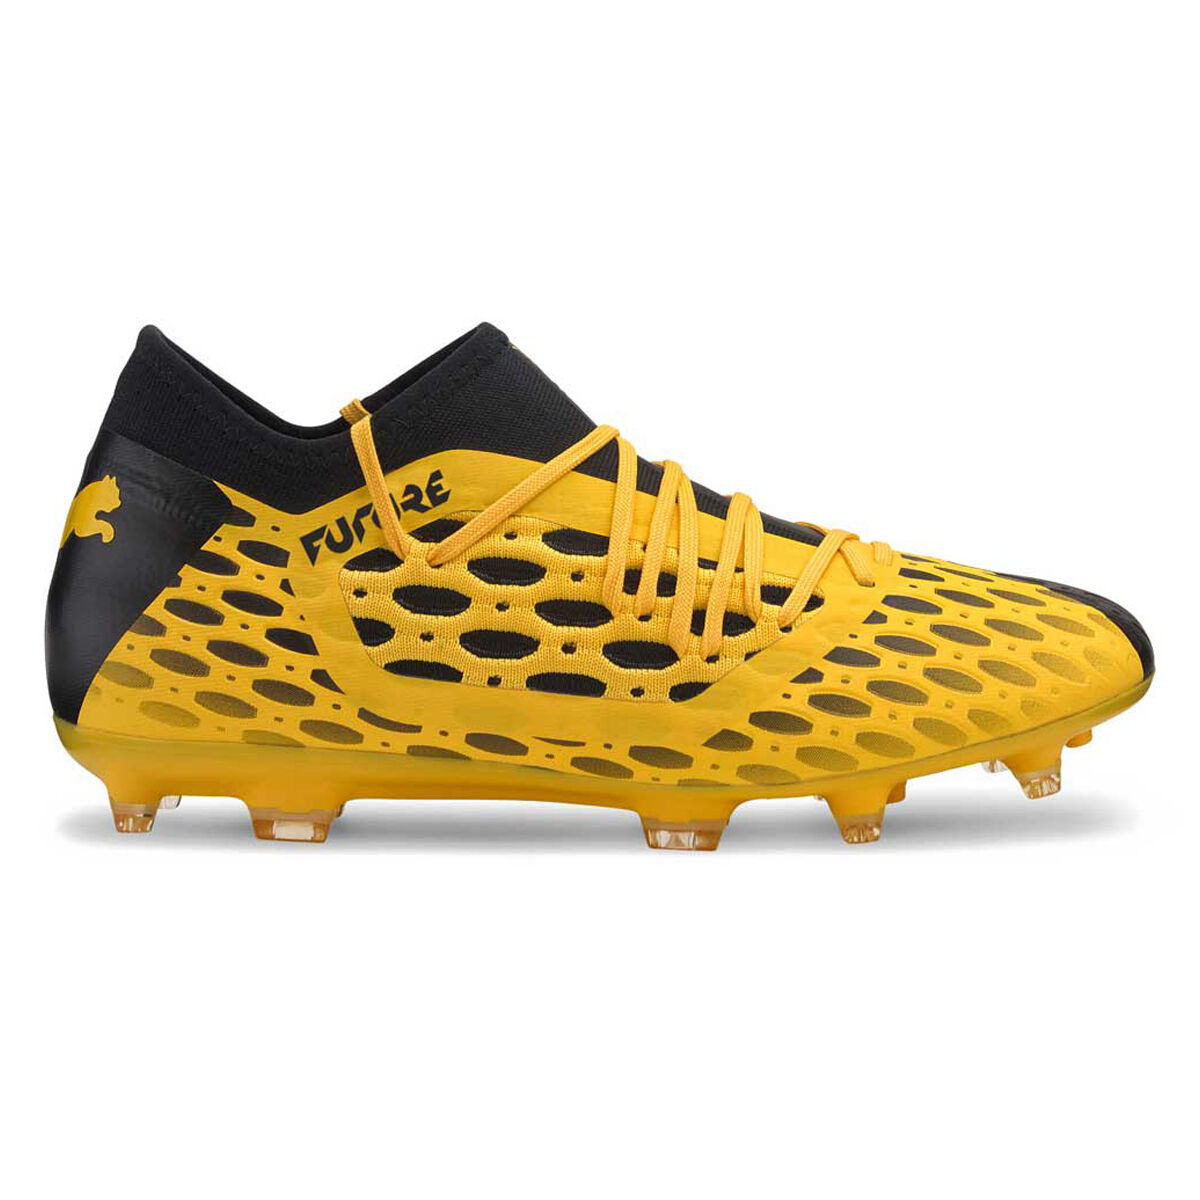 future puma football boots